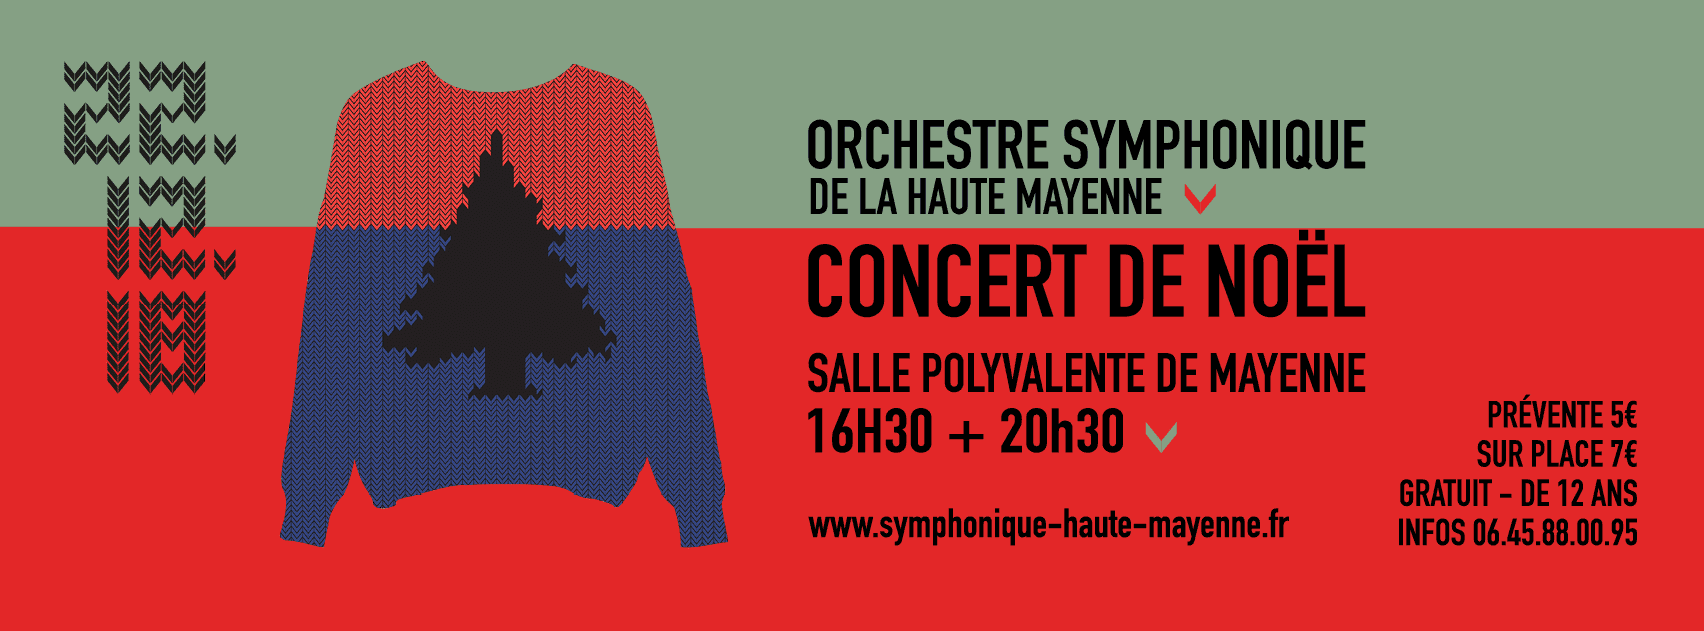 Couverture facebook Icone Orchestre Symphonique de Haute Mayenne 2018 - Burosuper